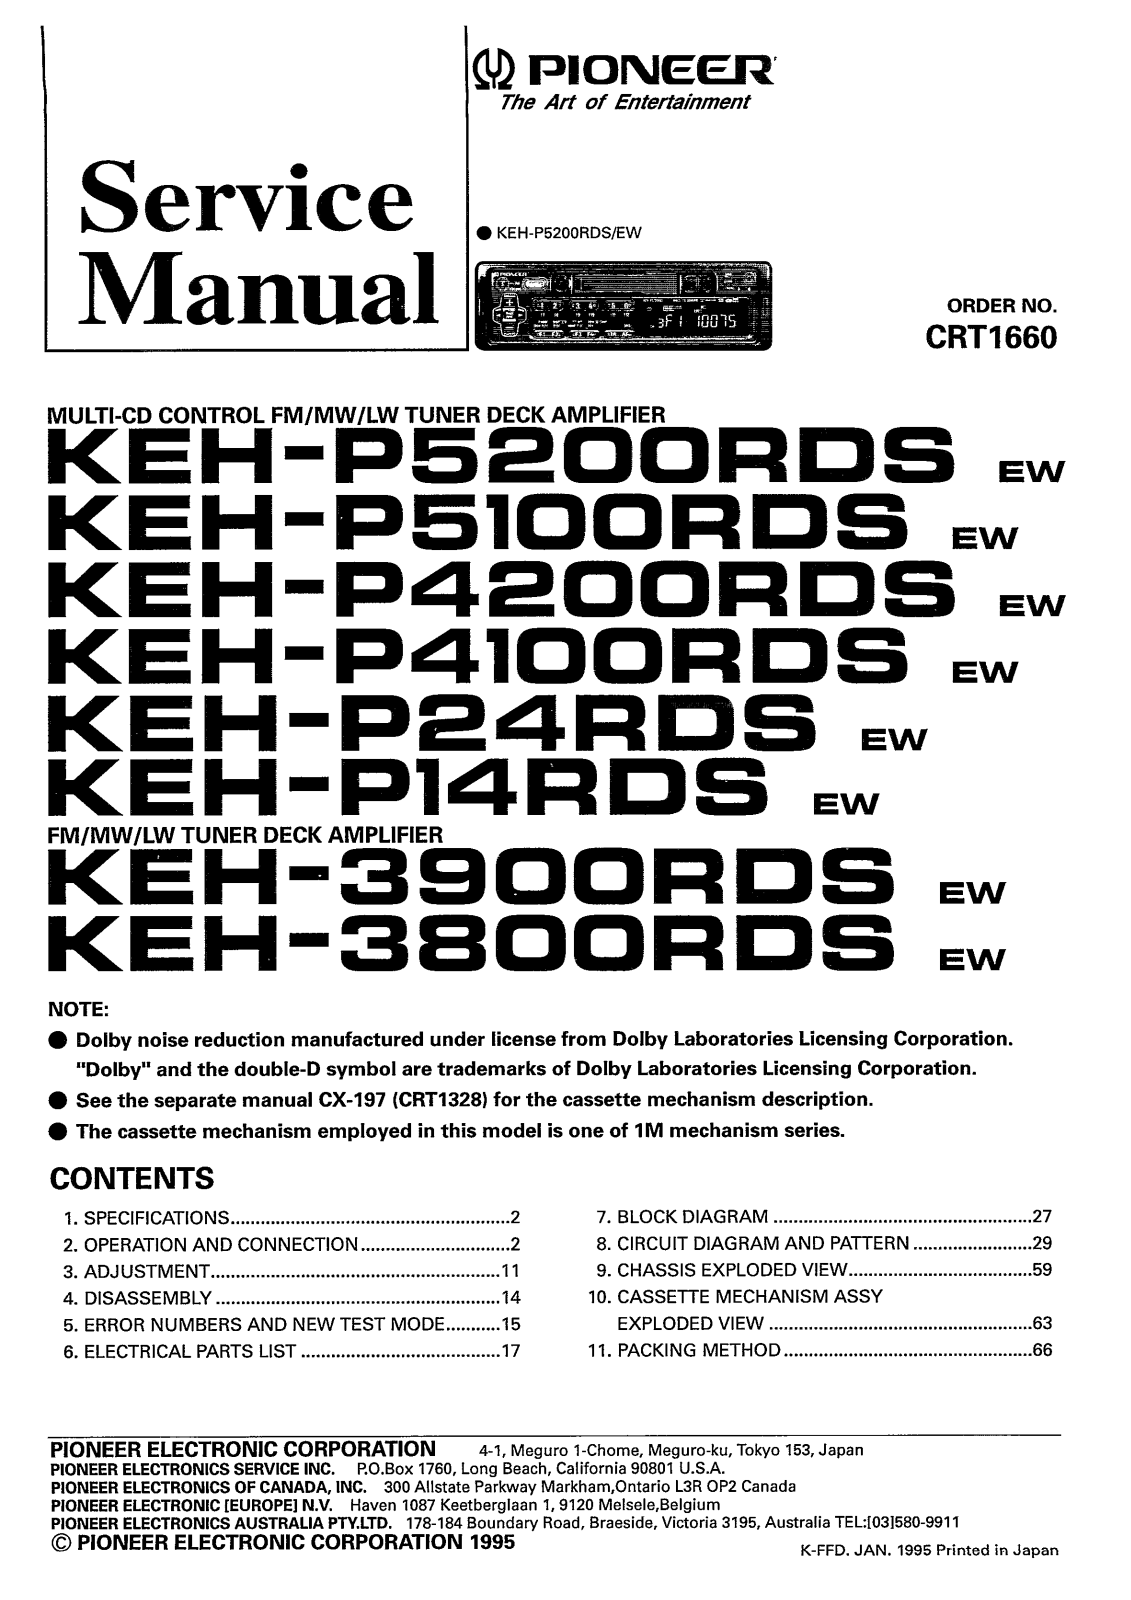 PIONEER KEH-P14, KEH-P24, KEH-3800, KEH-3900, KEH-P4100 Service Manual